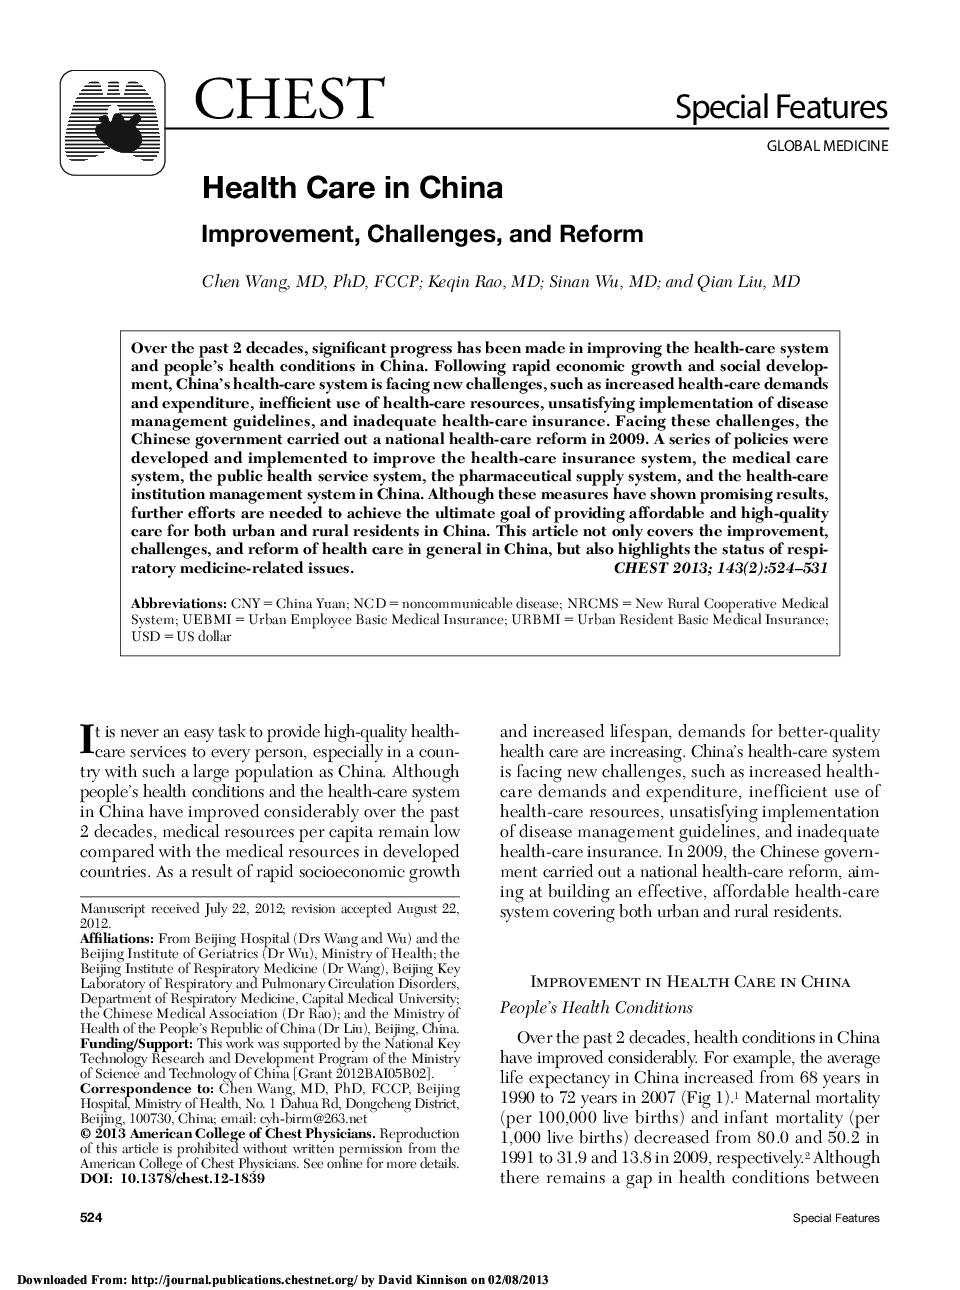 بهداشت و درمان در چین 